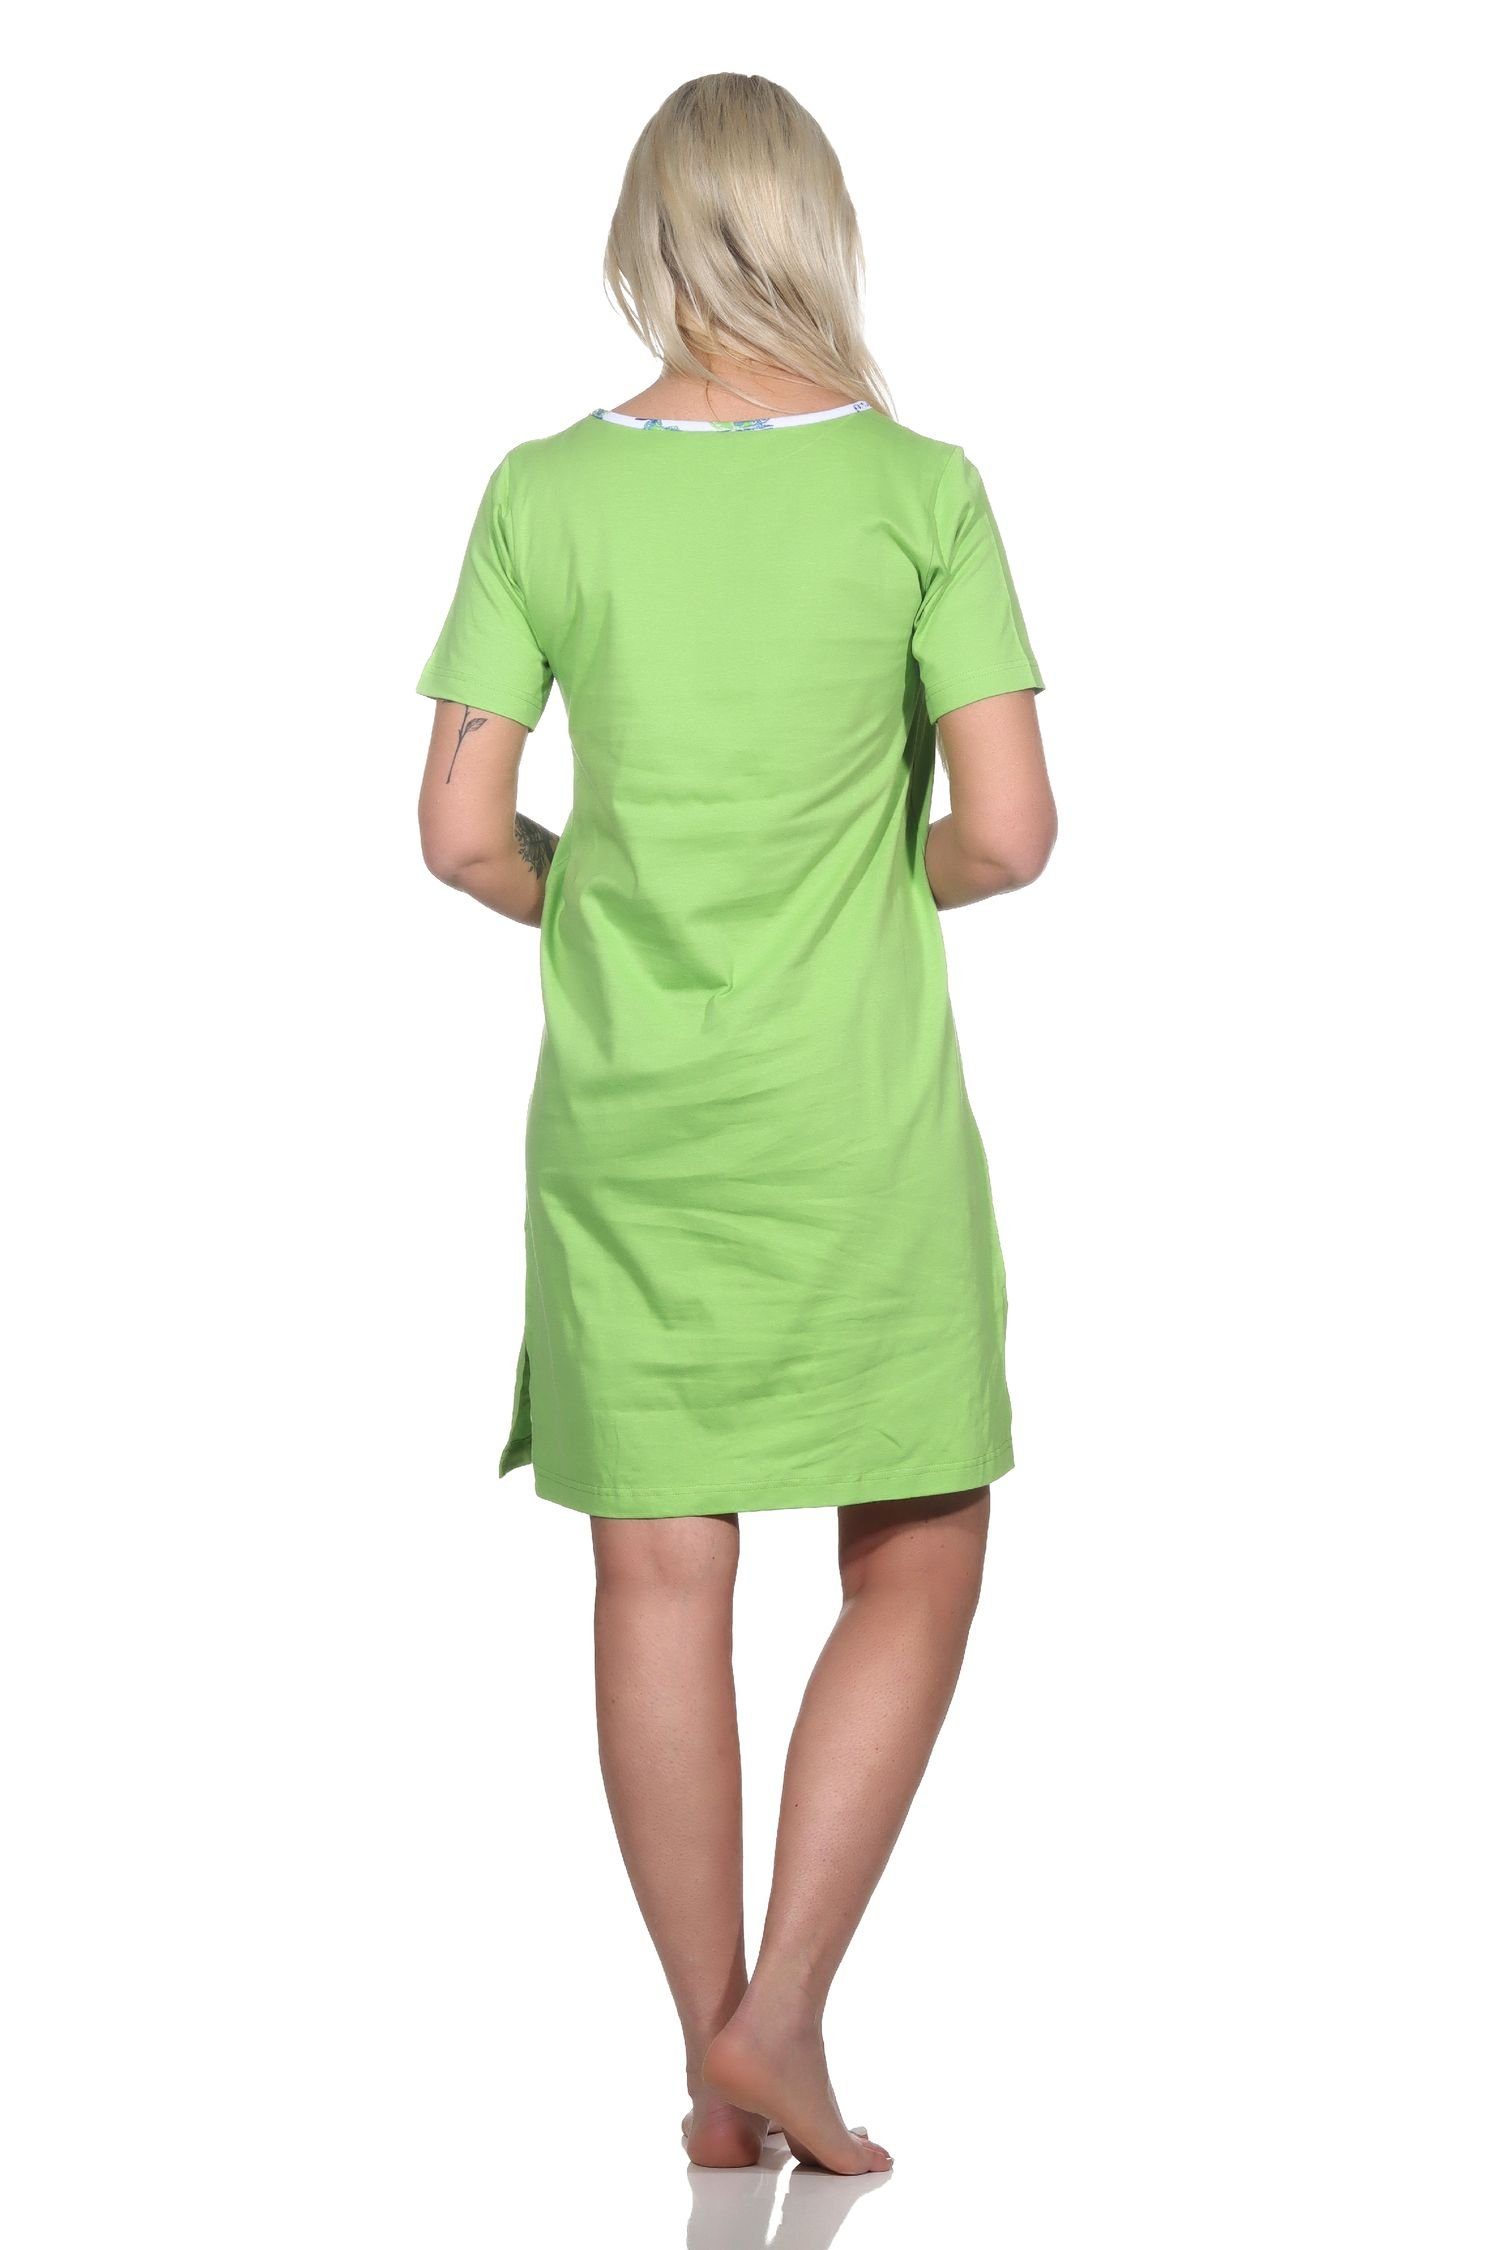 Normann Damen Nachthemd Nachthemd grün kurzarm als Motiv Kaktus mit